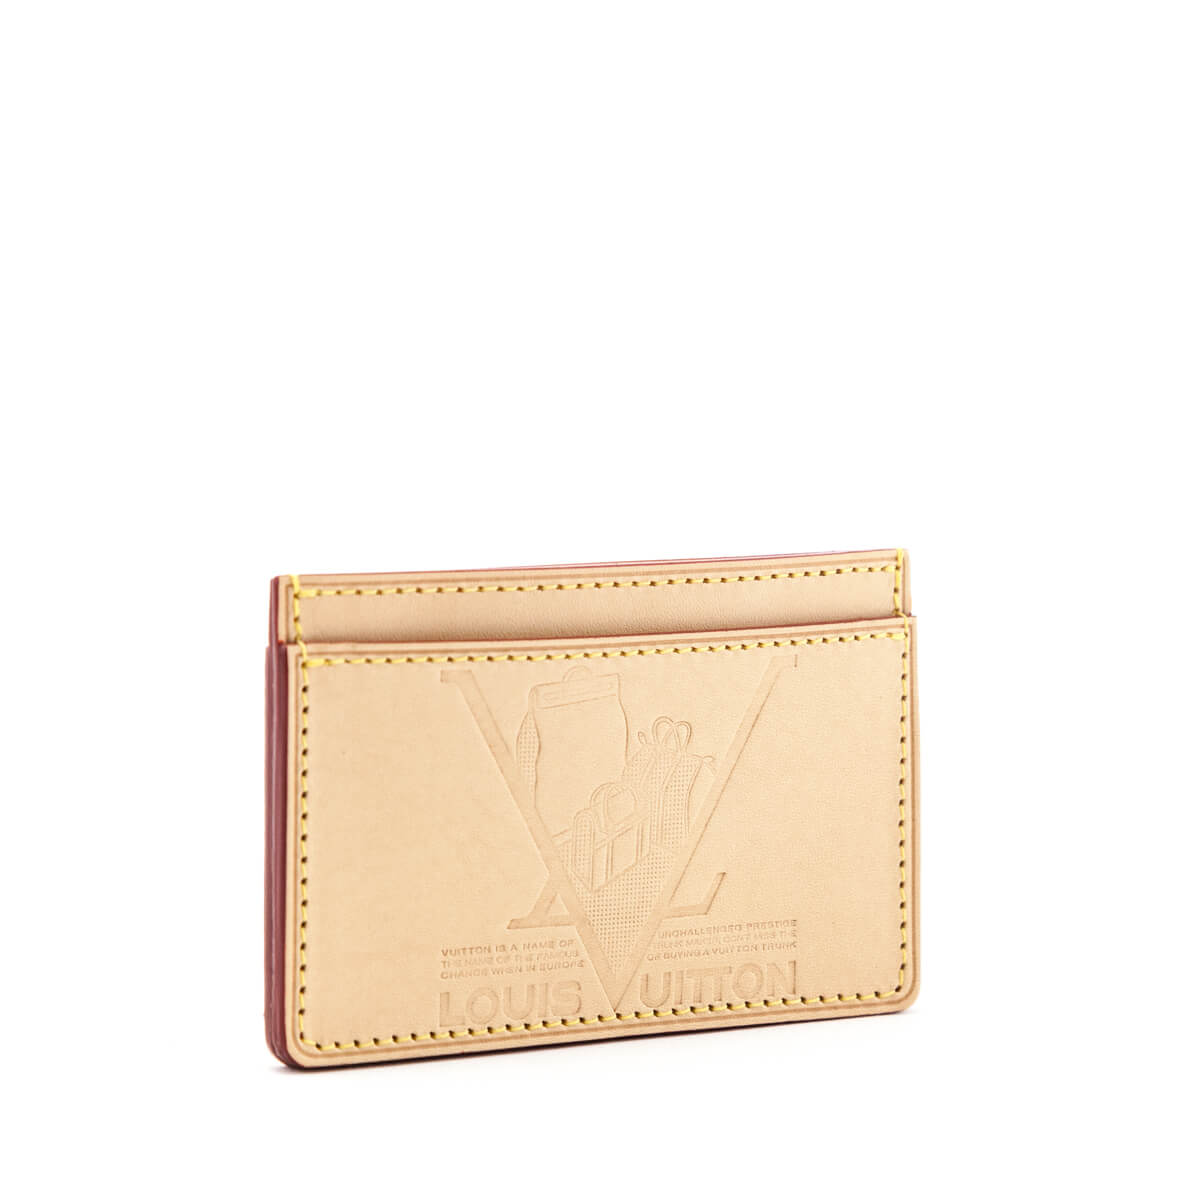 Louis Vuitton Natural Vachetta VIP Card Holder - Louis Vuitton Canada